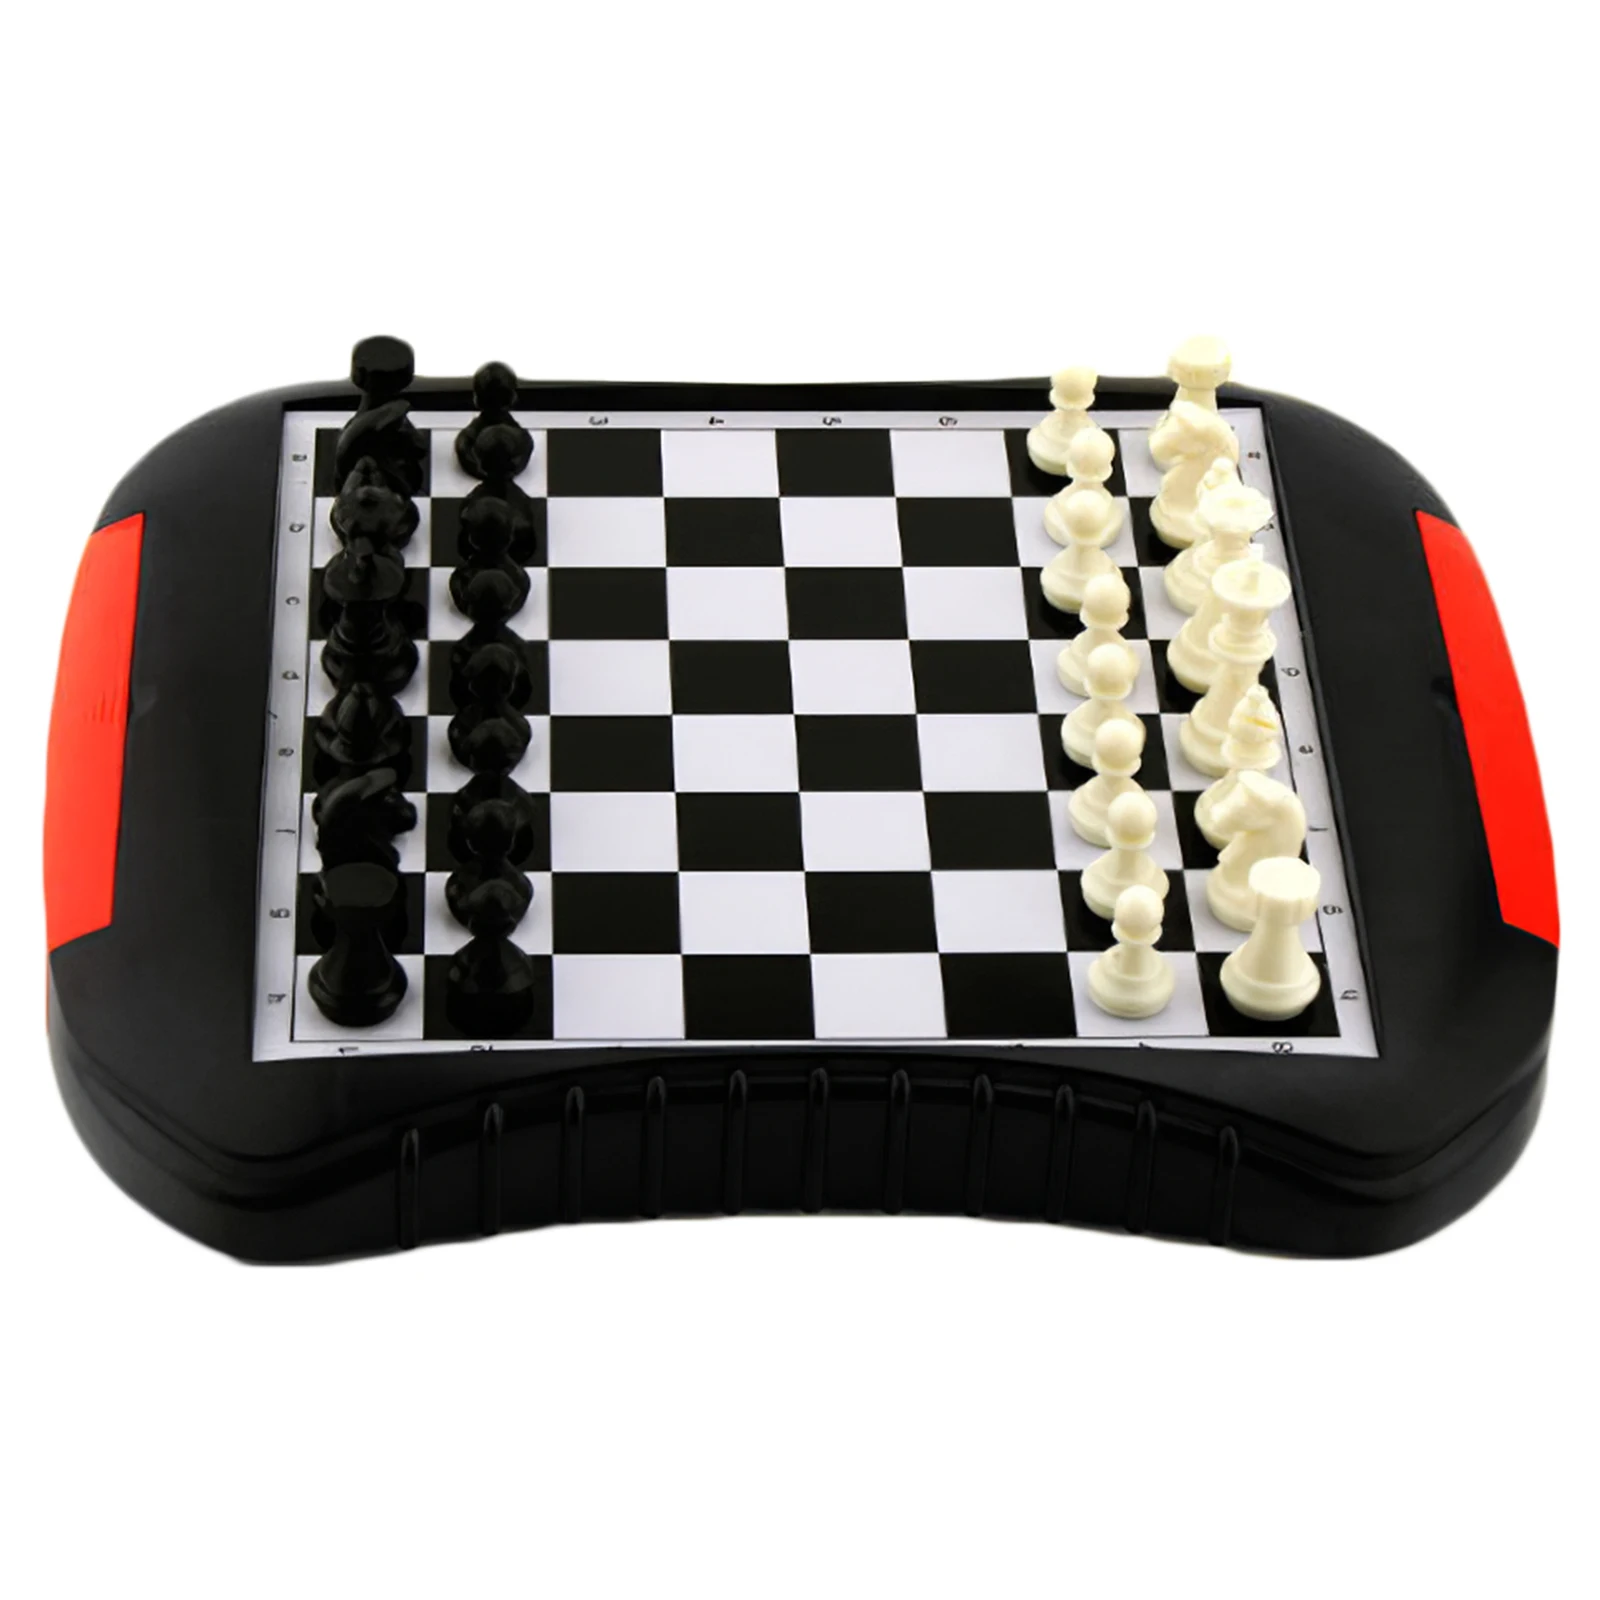 

Магнитная шахматная доска переносные шахматы Board хорошего качества, образовательная игрушка для семейного собрания, путешествий на открыт...